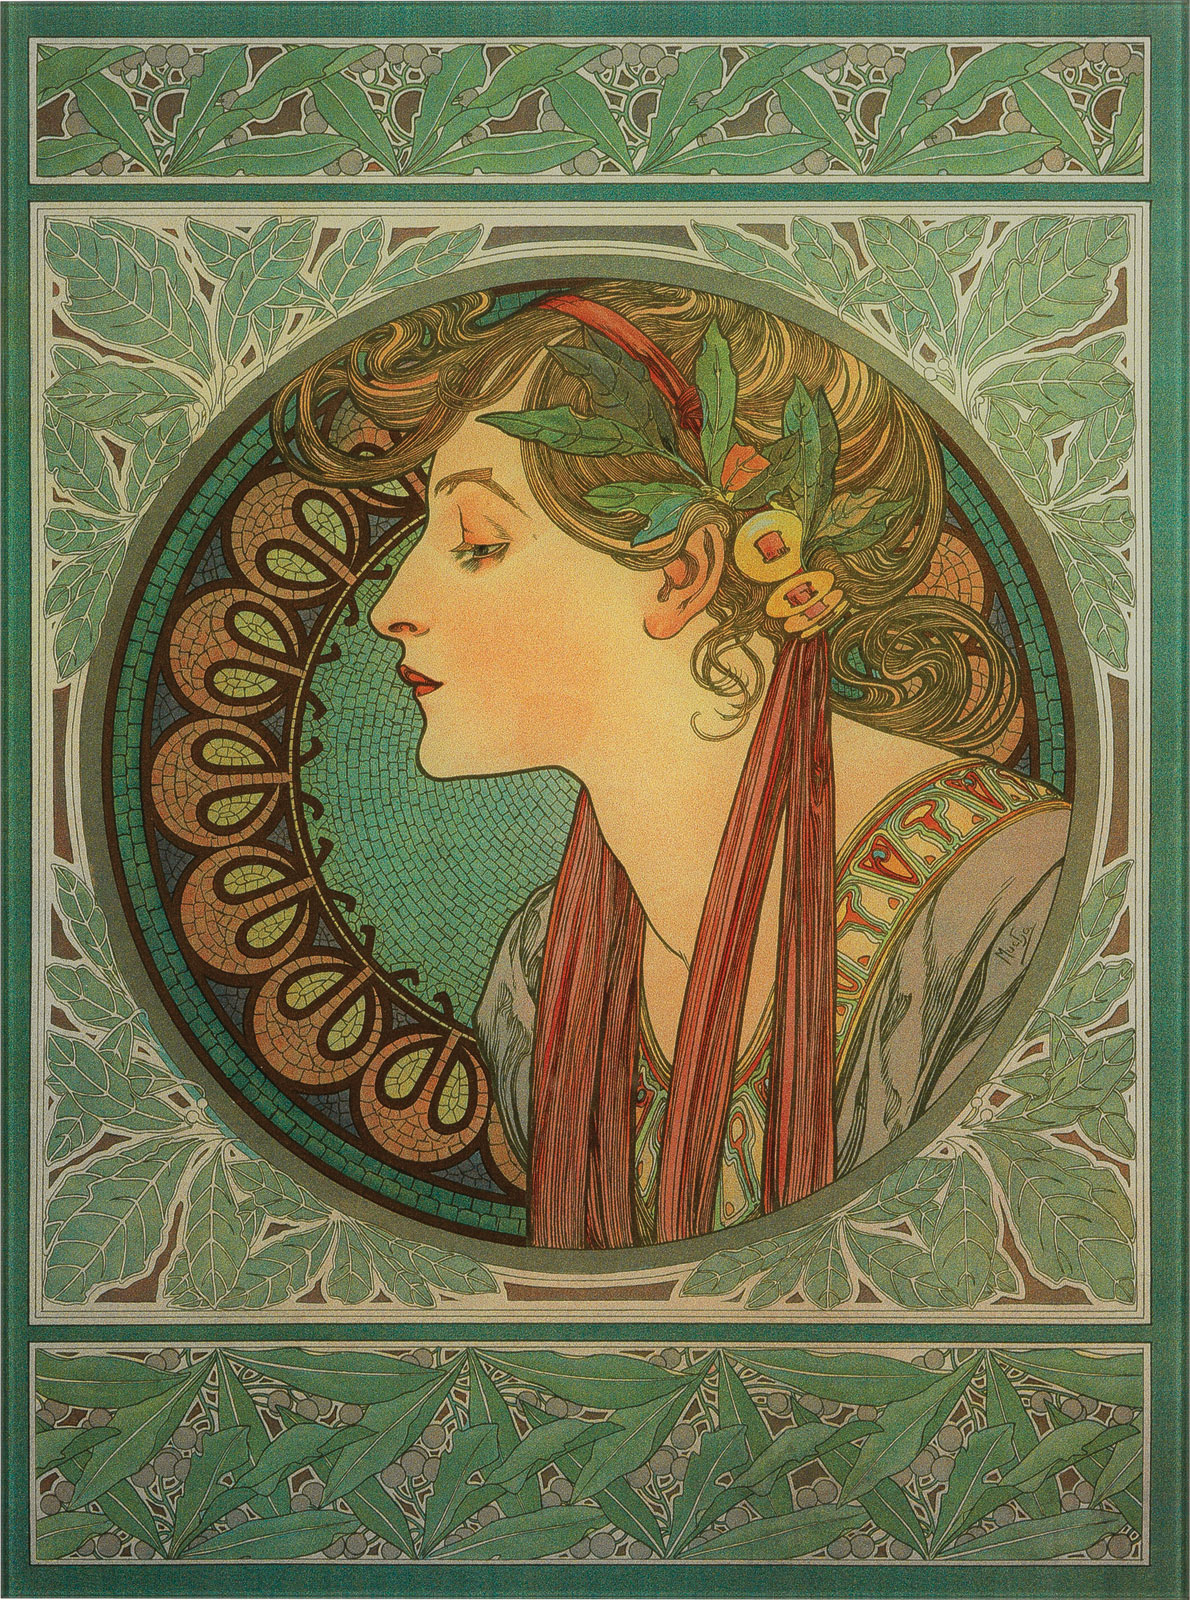 Glasbild "Lorbeer" (1901) von Alphonse Mucha